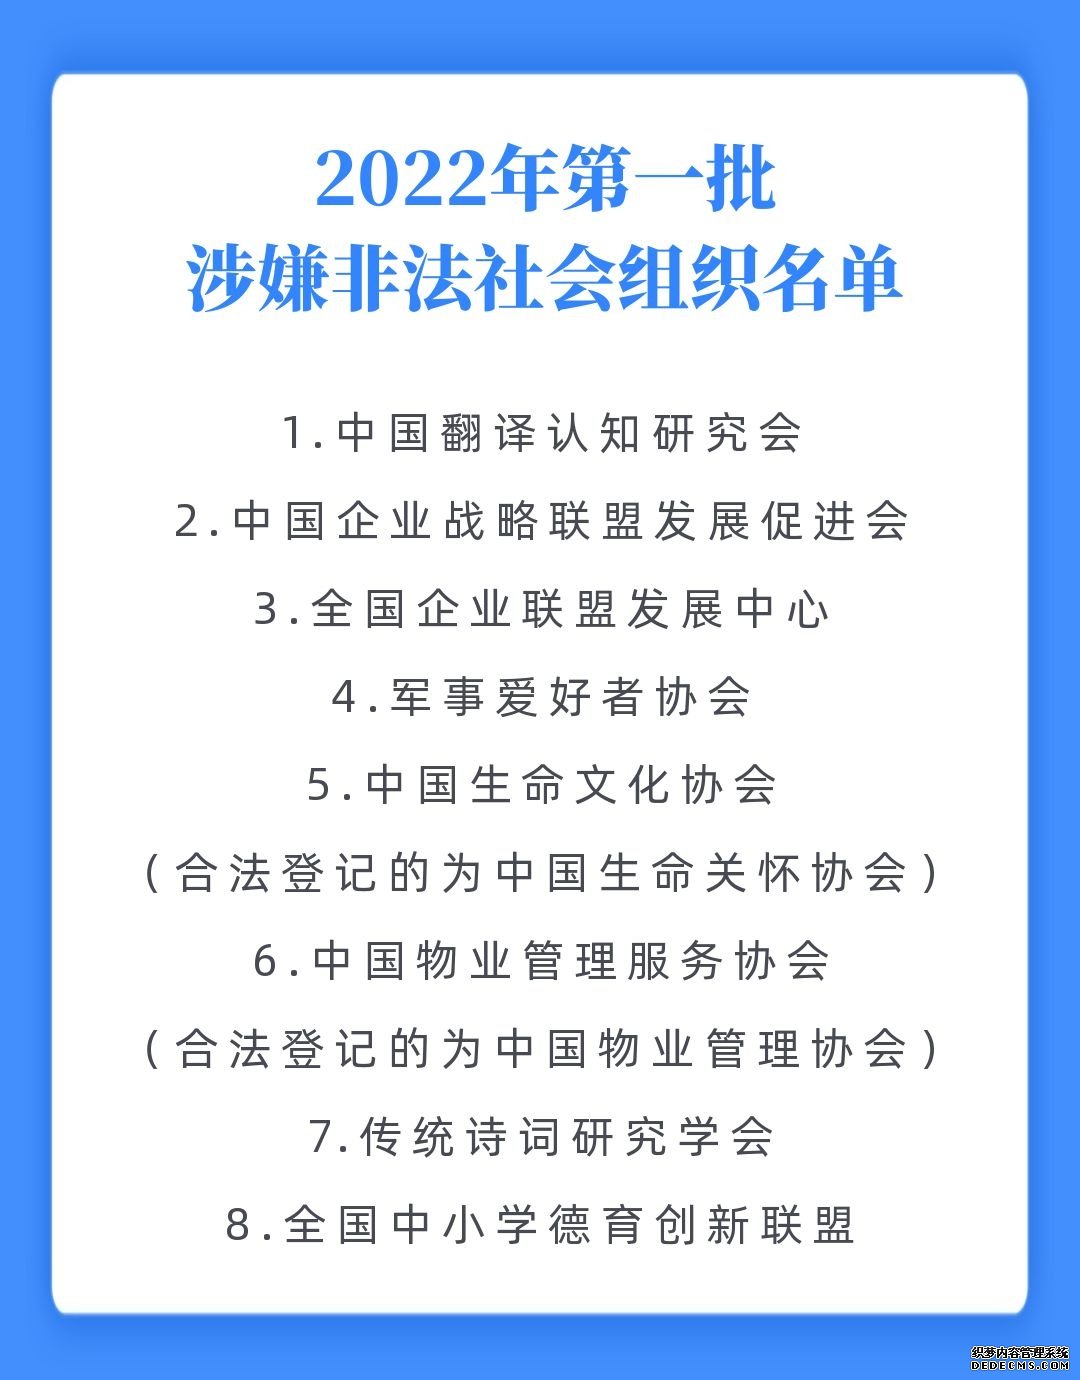 2022年第一批涉嫌非法社会组织名单公布中国物业管理服务协会等8家在列